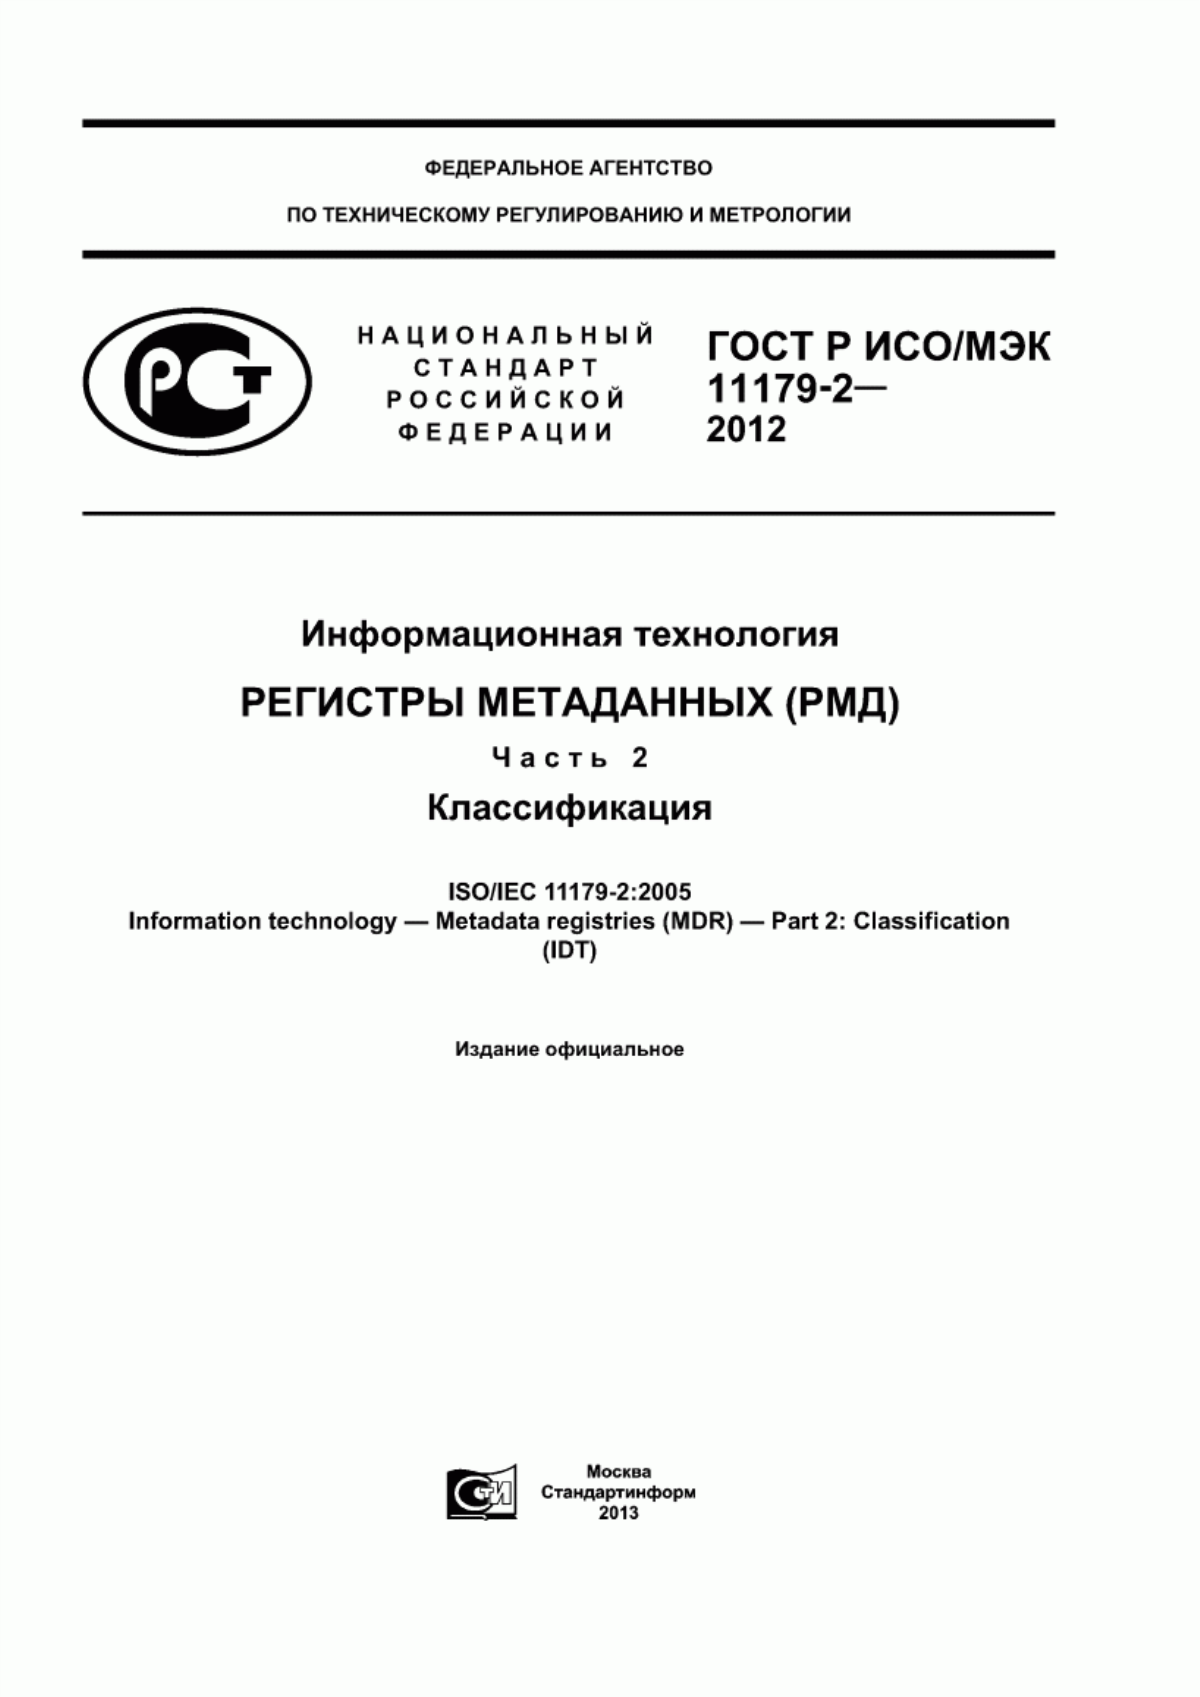 ГОСТ Р ИСО/МЭК 11179-2-2012 Информационная технология. Регистры метаданных (РМД). Часть 2. Классификация